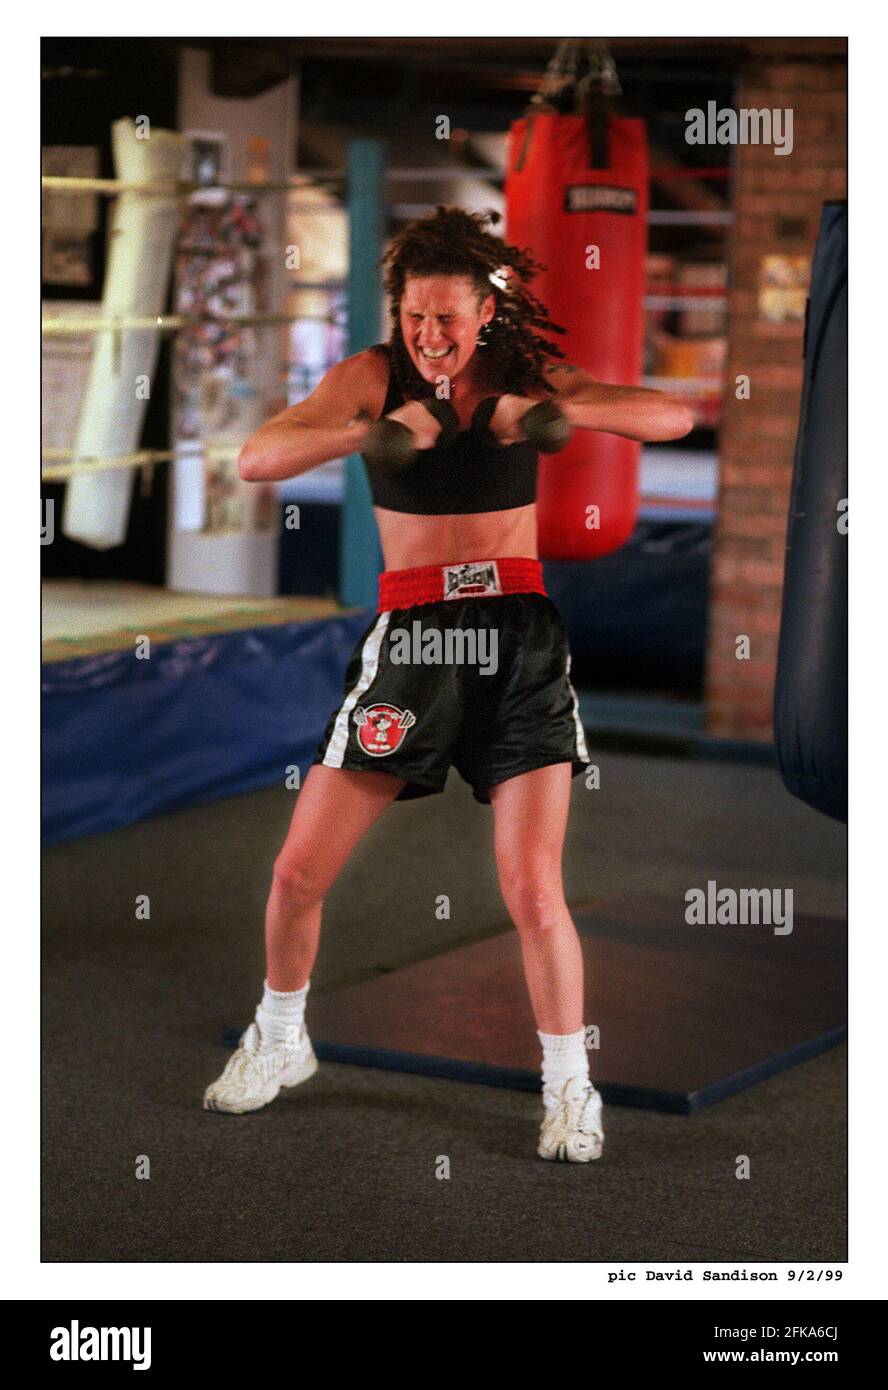 Boxeur Jane Couch formation à Bristol, en préparation à son combat samedi. Banque D'Images